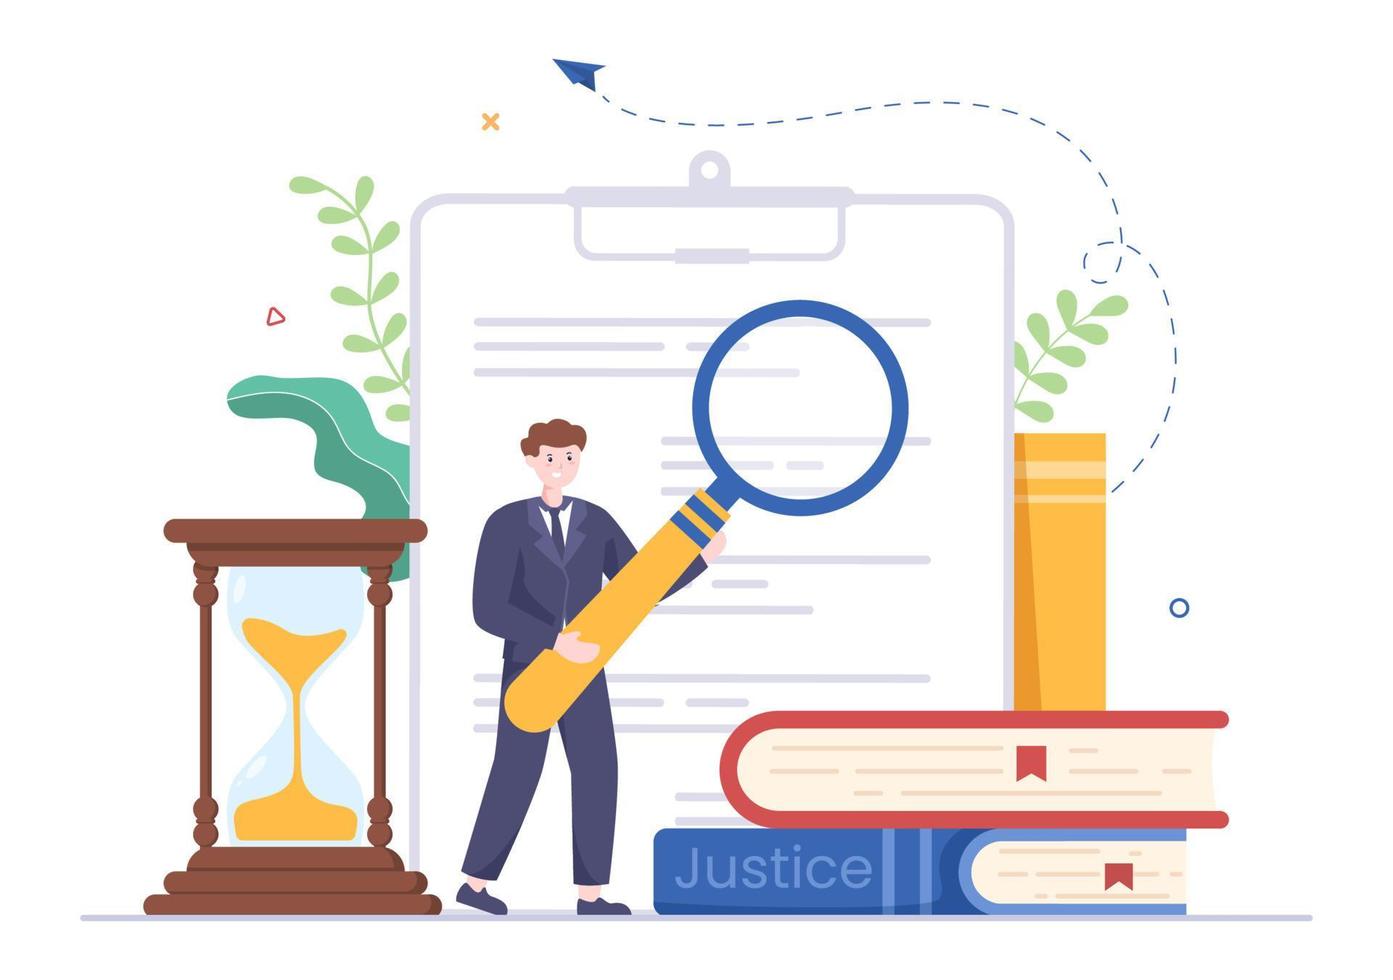 abogado, abogado y justicia con leyes, escalas, edificios, libro o martillo de juez de madera para consultor en ilustración de caricatura plana vector